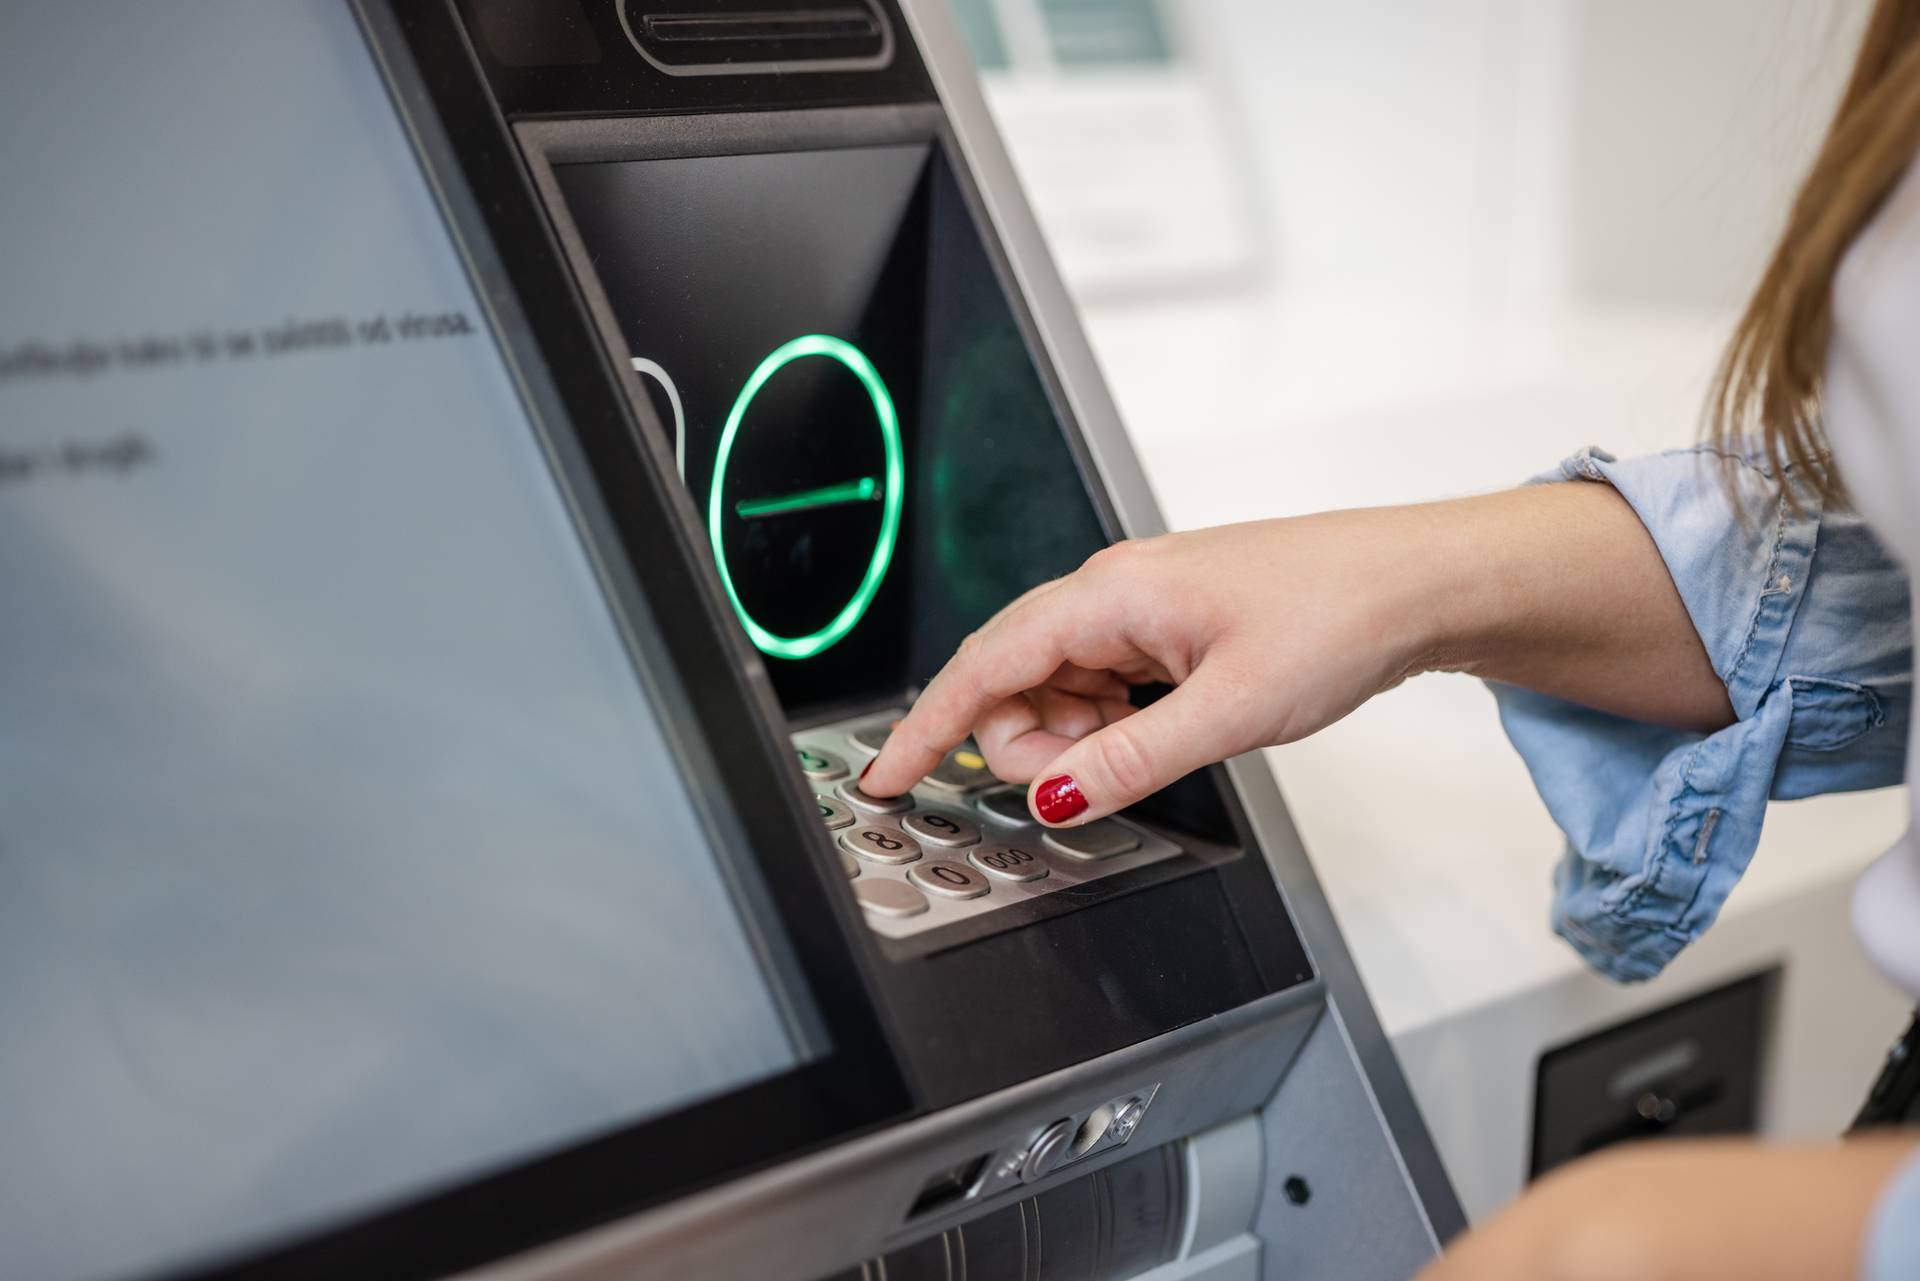 Érdekes információ terjed arról, mire képes az ATM-nél fordítva megadott PIN-kód.